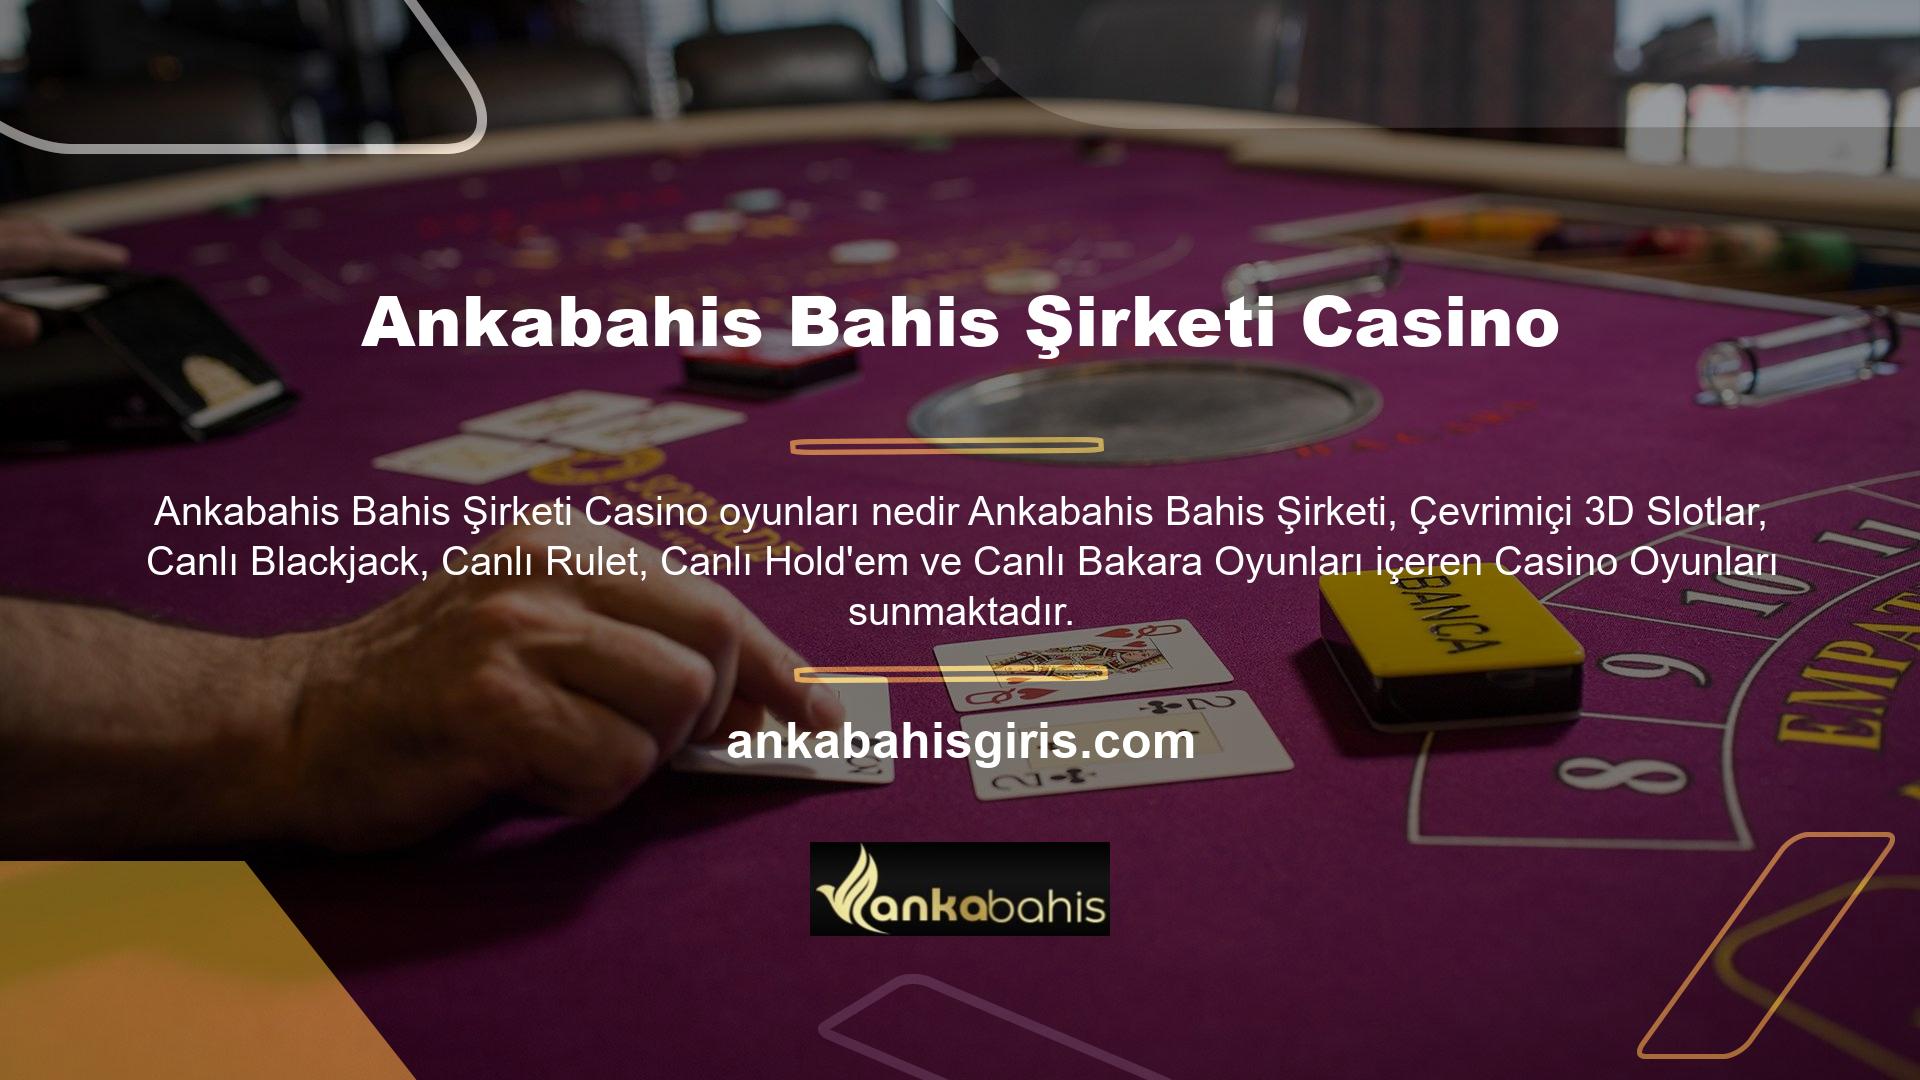 Ankabahis Bahis, kullanıcılarına Ankabahis Bahis Şirketi Casino bir deneyim sunarak, Türkiye ve bölgedeki çoğu ülkenin standartlarını aşan birinci sınıf bir hizmet sunmaya devam ediyor